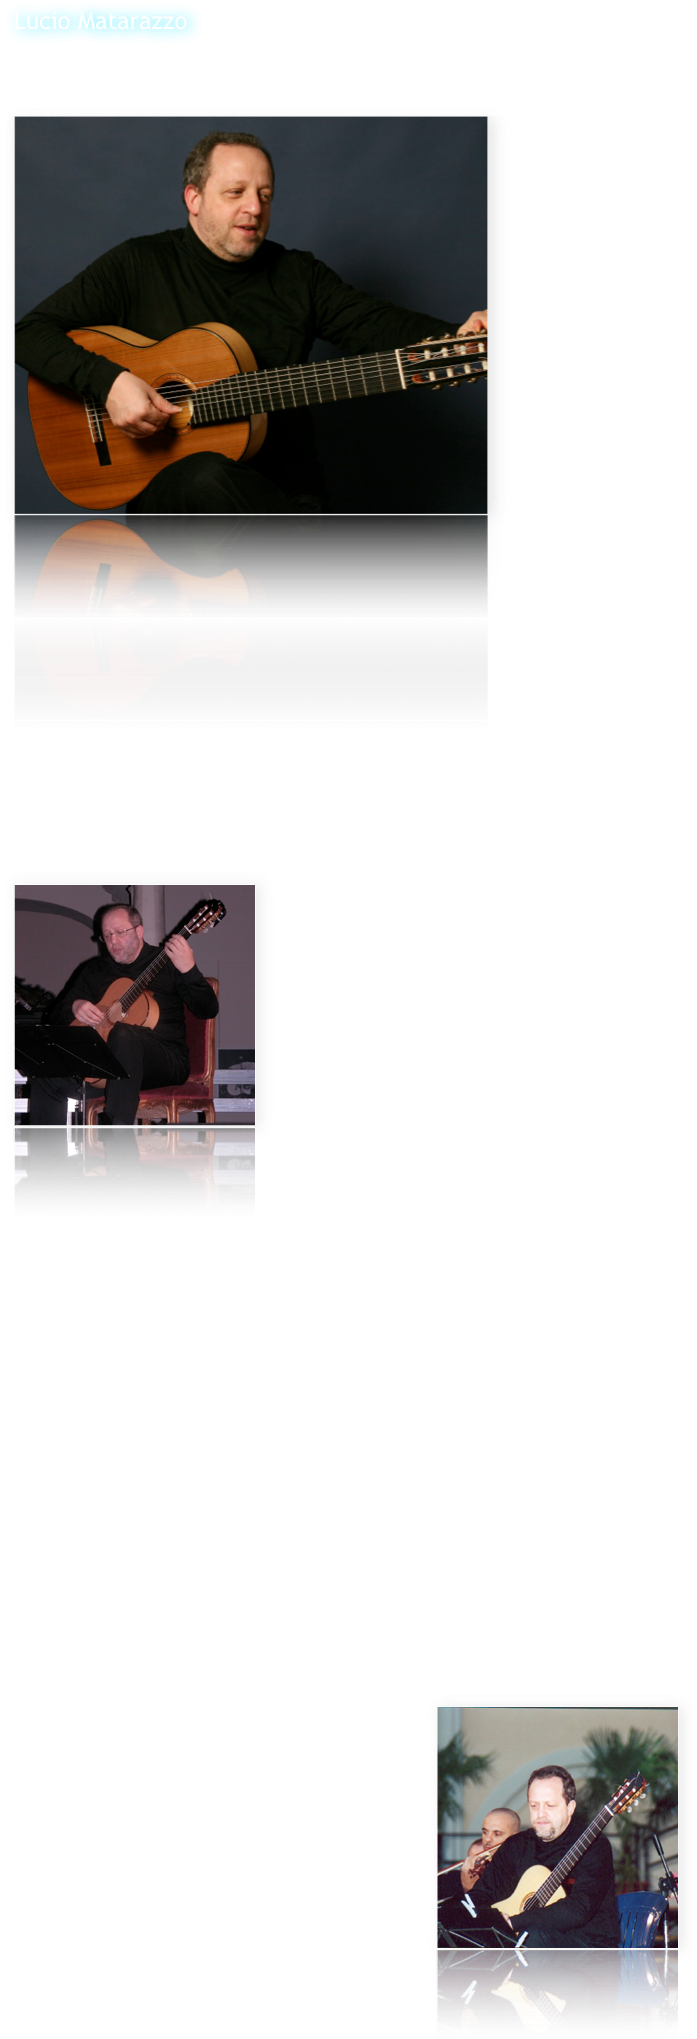 Lucio Matarazzo
 
ha studiato al Conservatorio "D.Cimarosa" di Avellino con il M° E.Caliendo conseguendo il diploma "Summa cum laude".
Ha seguito corsi di perfezionamento con O.Ghiglia e J.Tomas e poi con A.Gilardino presso l'Accademia￼ Superiore di Musica "L.Perosi" di Biella dove si è diplomato con "Eccellente - Menzione Speciale".
Sin dal periodo di studi in Conservatorio ha formato con il chitarrista M.Fragnito un duo di chitarre che si è imposto subito a livello internazionale come una delle più importanti formazioni di questo genere.
In duo ha vinto il primo premio in importantissimi concorsi di musica da camera come quelli di Stresa, Palmi e Berlino, laureandosi vincitore anche in quelli di Forte dei Marmi e di Trapani.
Ha partecipato ad importanti festival di musica contemporanea come "Musica del nostro secolo" a Pescara, "Aterforum" a Ferrara, "Festival T.Yamashita" a Berlino.
Ha curato la revisione e la pubblicazione per le Ed.Berben, nella collana di musiche del ‘900 per chitarra diretta da A.Gilardino, di opere di S.Dodgson, A.Ruiz Pipò, A.Piazzolla, F.Farkas.
Ha fatto più volte parte di commissioni di importantissimi concorsi internazionali come il "Segovia" di Palma di Maiorca, lo "Yamashita" di Berlino, il "De Bonis" di Cosenza, il “Pittaluga” di Alessandria, etc.
Ha inciso 2 LP e 5 CD con musiche per due chitarre per la Lira Records, la Ducale e la EDI-PAN.

Dopo una ventennale esperienza di duo che lo ha portato a suonare nelle principali città europee - eseguendo tra l'altro anche prime assolute come l'integrale dei 24 Preludi e Fughe "Les Guitares bien Tempérées" op.199 di M.Castelnuovo Tedesco di cui ha curato la riedizione in 4 voll. per le Ed.Berben - ha registrato alcuni CD solistici di studi per chitarra di autori dell'800: per l'etichetta Arkadia-Agorà due CD dedicati a M.Carcassi (Studi op.60 e Capricci op.26) e a L.Legnani (36 Capricci op.20) che hanno riscosso un grandissimo successo internazionale e per la Niccolò Records un CD con una raccolta di studi e composizioni varie di M.Giuliani, che ha avuto un successo strepitoso tanto da essere premiato come miglior CD del 1999 dal Sindaco di Bisceglie, città natale di M.Giuliani.
Nel 2001 ha suonato al Teatro di San Carlo di Napoli brani da “Le marteau sans maître” in un concerto dedicato a P.Boulez alla presenza del compositore francese.

￼Nel 1996 ha costituito, con tre giovani chitarristi diplomati con lode presso il Conservatorio di Avellino, un quartetto di chitarre, il GuitArt Quartet che è oggi considerato una delle formazioni più importanti e originali nel panorama chitarristico mondiale, motivato da un preciso progetto innovativo basato su una nuova concezione del quartetto di chitarre che percorre l’idea di una concertazione ai limiti del più arduo virtuosismo. 
Per questa formazione è nato un interesse da parte di Autori che hanno scritto opere originali per esaltarne le caratteristiche. Nasce così il Concerto Italiano per quattro chitarre e orchestra di Angelo Gilardino, eseguito in prima assoluta nel 1999, e nell’autunno 2001 il Concerto Rapsodico op.80 per quartetto di chitarre e grande orchestra, di Gerard Drozd, eseguito dal GQ in prima mondiale al Festival Internazionale di Lublino in Polonia.

La consacrazione internazionale del GQ avviene sempre nel 2001 quando Leo Brouwer scrive il Concierto Italico per il GQ, primi italiani a cui il maestro cubano dedica un suo concerto, dopo quelli scritti per i “grandi” della chitarra come J.Bream e J.Williams. Il “Concierto” viene eseguito in prima mondiale al Festival Internazionale di Todi con la direzione dello stesso Brouwer con il quale vengono realizzati sia il CD che un film-documentario in DVD che racconta la storia di quello che è stato definito dalla critica “l’evento chitarristico dell’anno”.

Con Brouwer nasce un intenso sodalizio concertistico e il GQ, con la sua direzione, si esibisce nel 2002 al Festival Internazionale dell’Avana e per il Teatro Regio di Parma. 
Sempre nel 2002 il magazine inglese Classical Guitar, dedica la sua copertina al GQ e una lunga intervista a cura di Colin Cooper, e M.Summerfield inserisce il GQ nel prestigioso volume “The Classical Guitar” che raccoglie tutte le celebrità del mondo chitarristico dal 1800 ad oggi.
Centinaia i concerti tentuti dal GQ nei maggiori festival e rassegne internazionali, tra cui quelli di Madrid, Lublino, Gliwice, Iserlohn, León, Cuba, Santo Tirso, L’Avana, Barcellona, Ciudad Real, Cordoba, Roma etc.

Molto intenso anche l’ambito concertistico “trasversale” del GQ, che ha visto protagonista il quartetto in Festival di confine e collaborazioni extra-classiche. Ricordiamo in proposito l’esecuzione dell’Electric Counterpoint di Steve Reich al “Musica e Oltre” di Pisa, la partecipazione nel luglio 2000 con Steve Hackett (fondatore dei Genesis), Frank Gambale (ex Chick Corea band) e Maurizio Colonna al Guitar Event 2000.
Nel 2007 il GQ ha iniziato una collaborazione con la notissima cantante Antonella Ruggiero partecipando all’evento “Un uomo in frac”, omaggio a Domenico Modugno tenutosi al Teatro Romano di Benevento, trasmesso da RaiUno e Rai International e visto in tutto il mondo da circa 45 milioni di persone. Il GQ ha anche partecipato come “guest stars” all’ultimo CD della Ruggiero “Genova la superba”, accompagnandola nel brano “Ma se ghe pensu”.

Nel 2002 il GQ ha tenuto un’acclamata tournée negli USA debuttando con la Hartford Festival Orchestra diretta da Brian Sparks per la Connecticut Classical Guitar Society e ha tenuto due masterclasses d’interpretazione chitarristica e musica da camera alla Hartt School (University of Hatford) e nel 2003 ha ottenuto un grandissimo successo al Festival di Iserlohn (Germania).
Nel 2005 il GQ ha suonato nel prestigiosissimo Festival di Cordoba la prima esecuzione mondiale del Concierto Brasileiro, secondo concerto scritto da L.Brouwer su temi di E.Gismonti.

￼Del GQ è in distribuzione internazionale il CD From Spain to South America (Niccolò records), con musiche di Albéniz, de Falla e Piazzolla, definito dalla rivista francese Les cahiers de la guitare “Et toujours règne cette impression très pleine due à l’interprétation qui est musicalement très impressionnante tant sur le plan de l’ensemble que sur celui de la couleur et de l’expression – très sensible…..les interprètes sont géniaux”, oltre al DVD “Diario Italico” realizzato con Leo Brouwer.
Recentemente il GQ ha registrato l’integrale delle musiche di Leo Brouwer per quartetto di chitarre che include anche la prima mondiale del Concierto Italico.

Con i componenti del GQ Lucio Matarazzo collabora anche alla conduzione di Guitart e di Guitart International, due tra le più prestigiose riviste dedicate al mondo della chitarra.
Oltre ad essere titolare della Cattedra di Chitarra presso il Conservatorio Statale di Musica di Avellino, è anche Direttore del Dipartimento di Chitarra e dei Corsi di Laurea di I e II Livello in Chitarra presso lo stesso Conservatorio.

Lucio Matarazzo suona con una chitarra del M° G.Giussani mod. Leonardo (cedro/cipresso), con meccaniche Exagon e corde D’Addario EXP.
